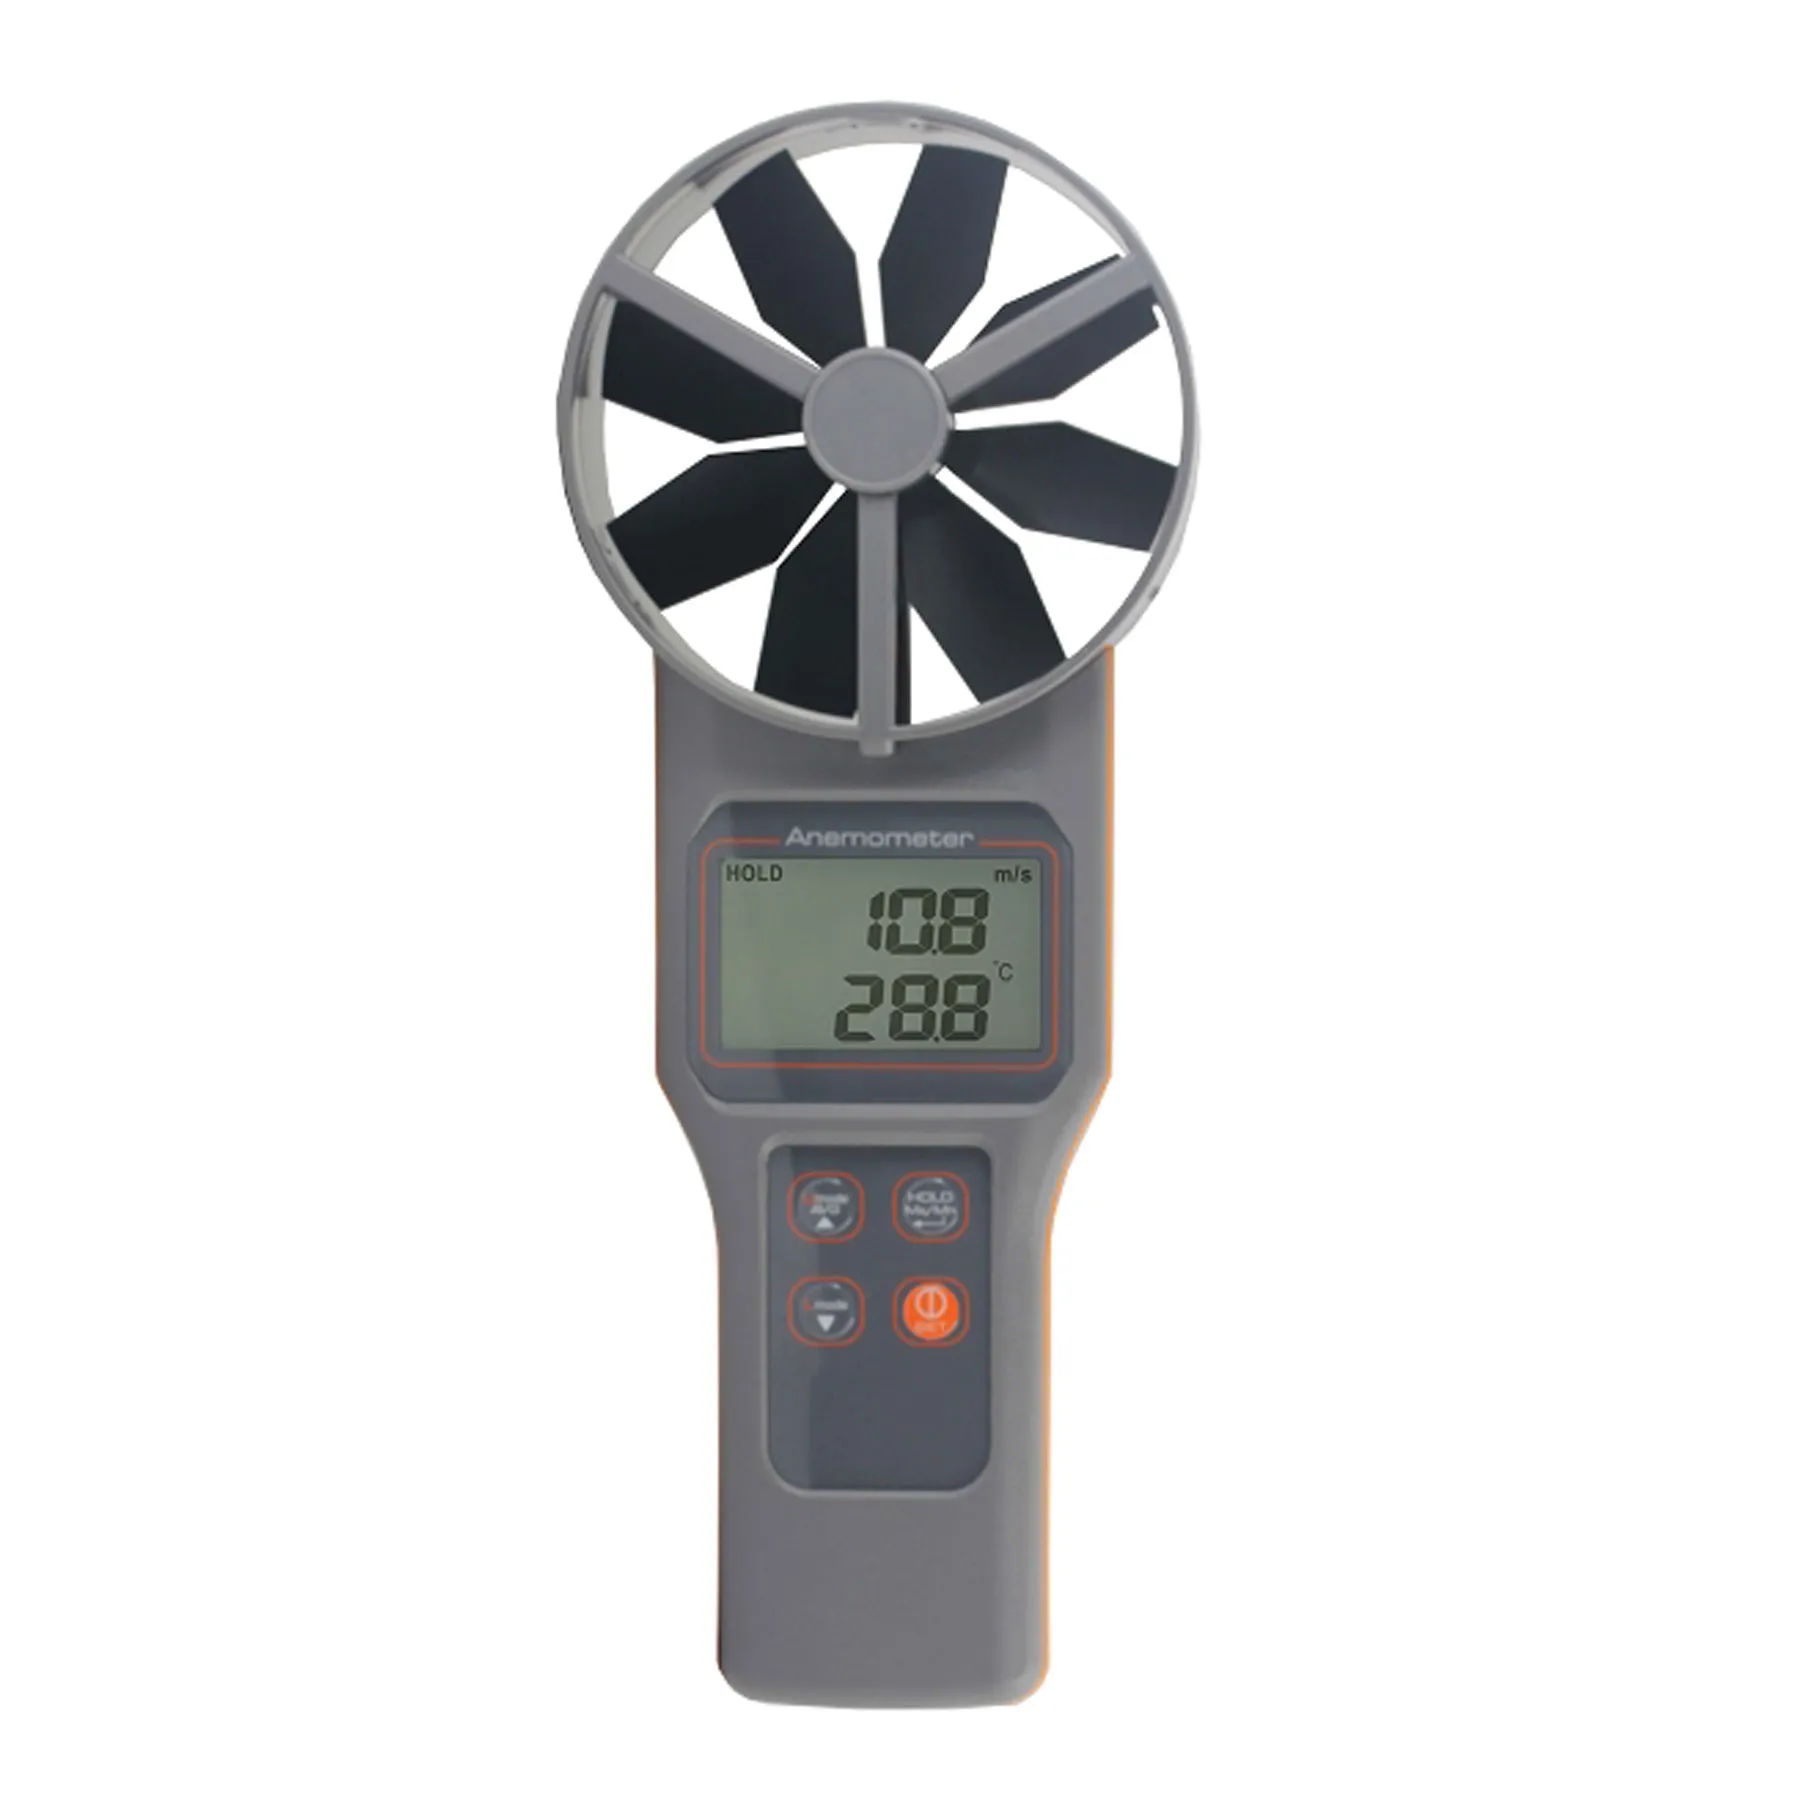 AZ8919 Temp. Anémomètre RH CO2 Mesure la vitesse de l'air, le volume, le CO2, la température, l'humidité, la température du bulbe humide du point de rosée.